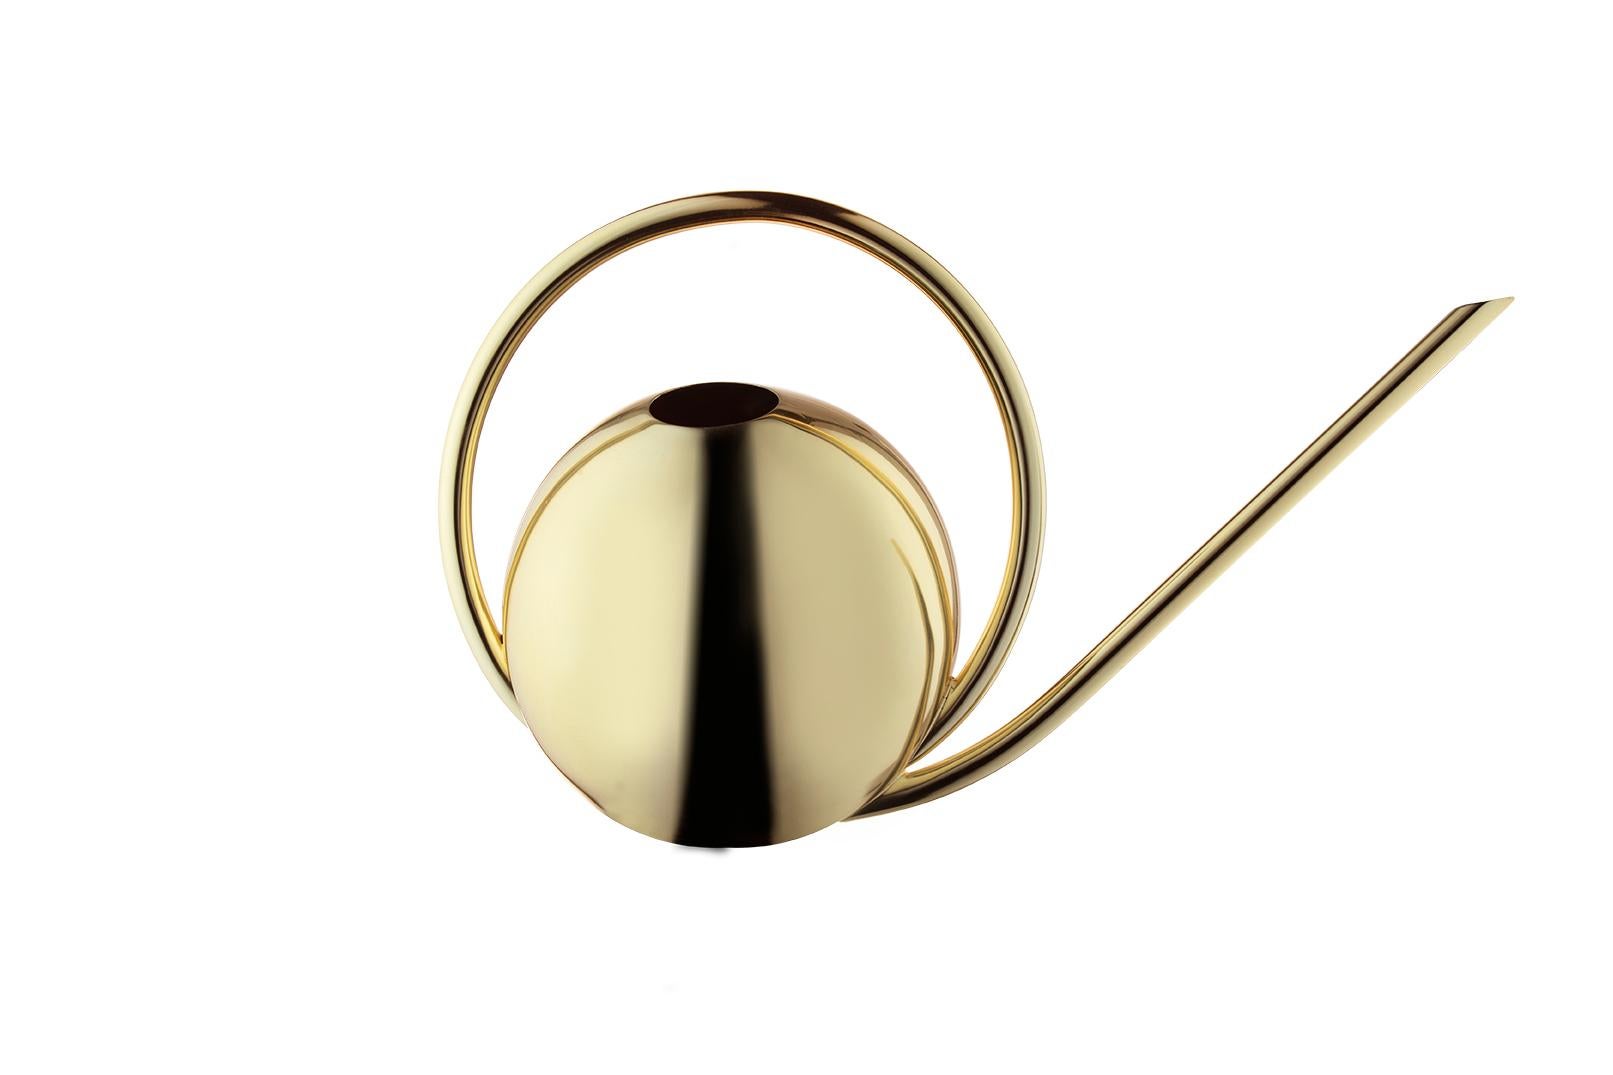 Gold Minimalistische Gießkanne
Abmessungen: T 37,2 x B 17 x H 23,1 cm 
MATERIALIEN: Stahl. 
Auch in schwarz erhältlich. 

Die Öffnung der Weltkugel-Gießkanne ist elegant dezentriert, was sie zugänglich und einzigartig zugleich macht. Ein Stück, das